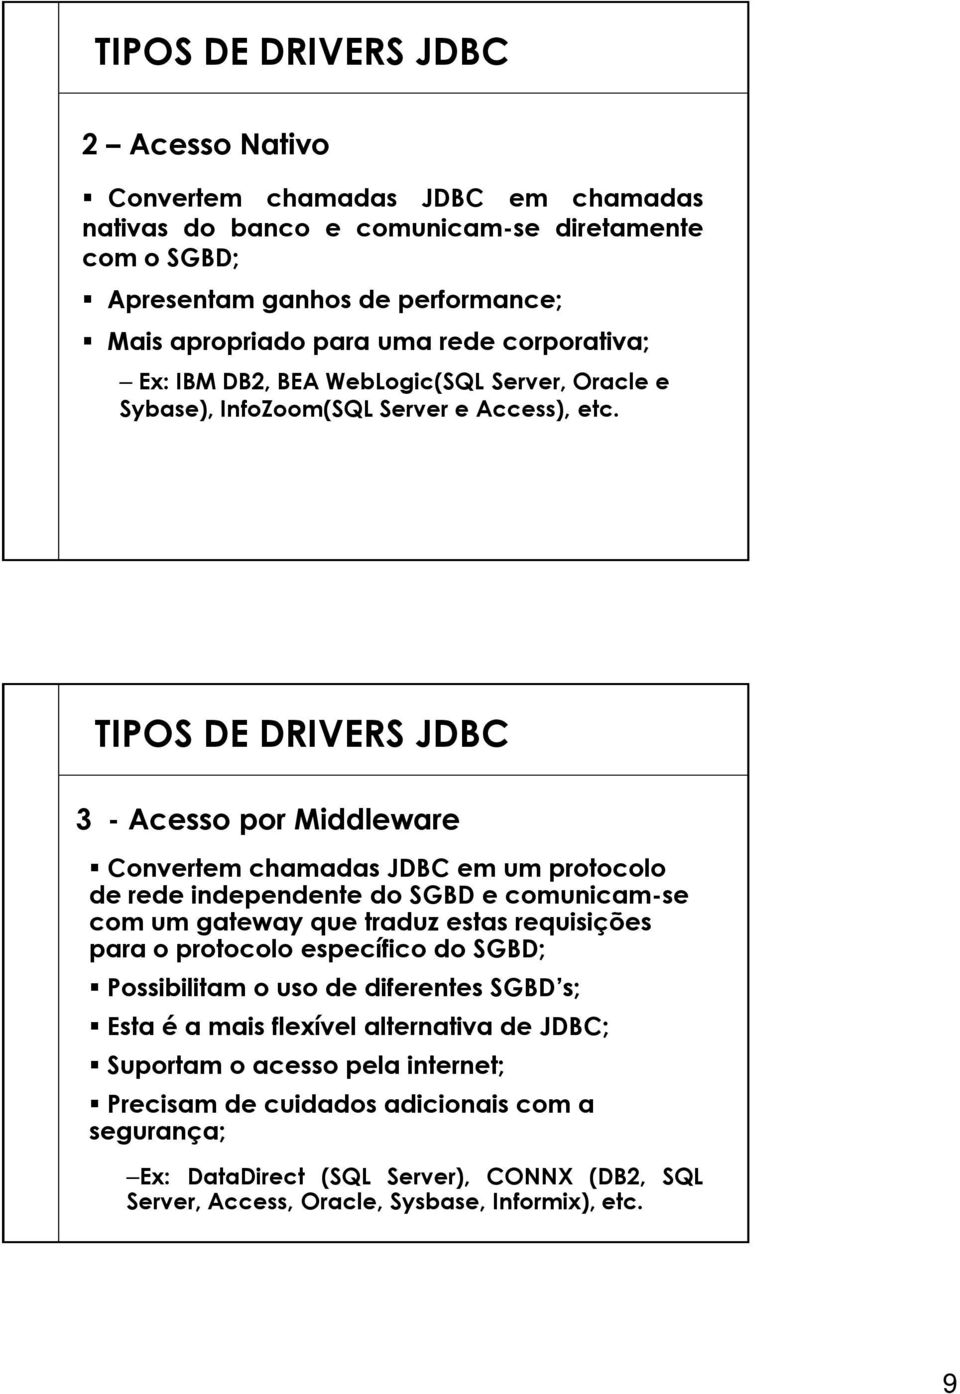 TIPOS DE DRIVERS JDBC 3 - Acesso por Middleware Convertem chamadas JDBC em um protocolo de rede independente do SGBD e comunicam-se com um gateway que traduz estas requisições para o protocolo